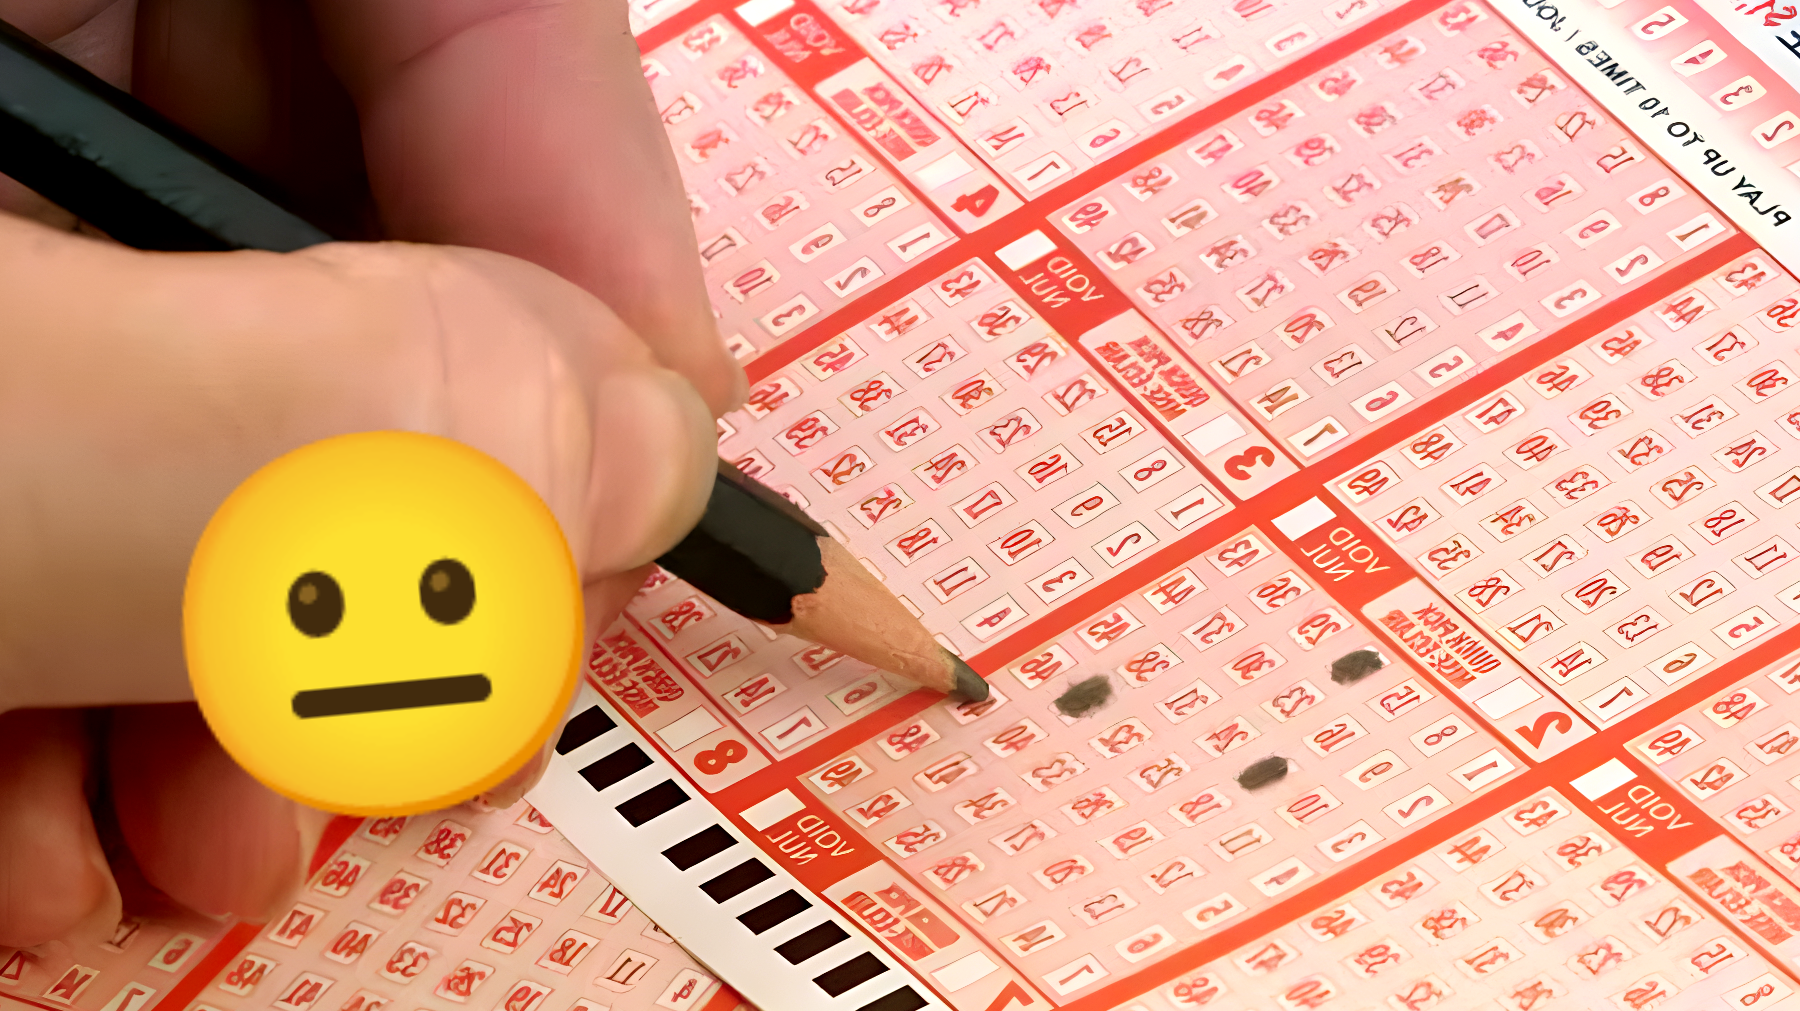 Scopri il segreto per vincere al Lotto: evita questi errori comuni con i numeri!